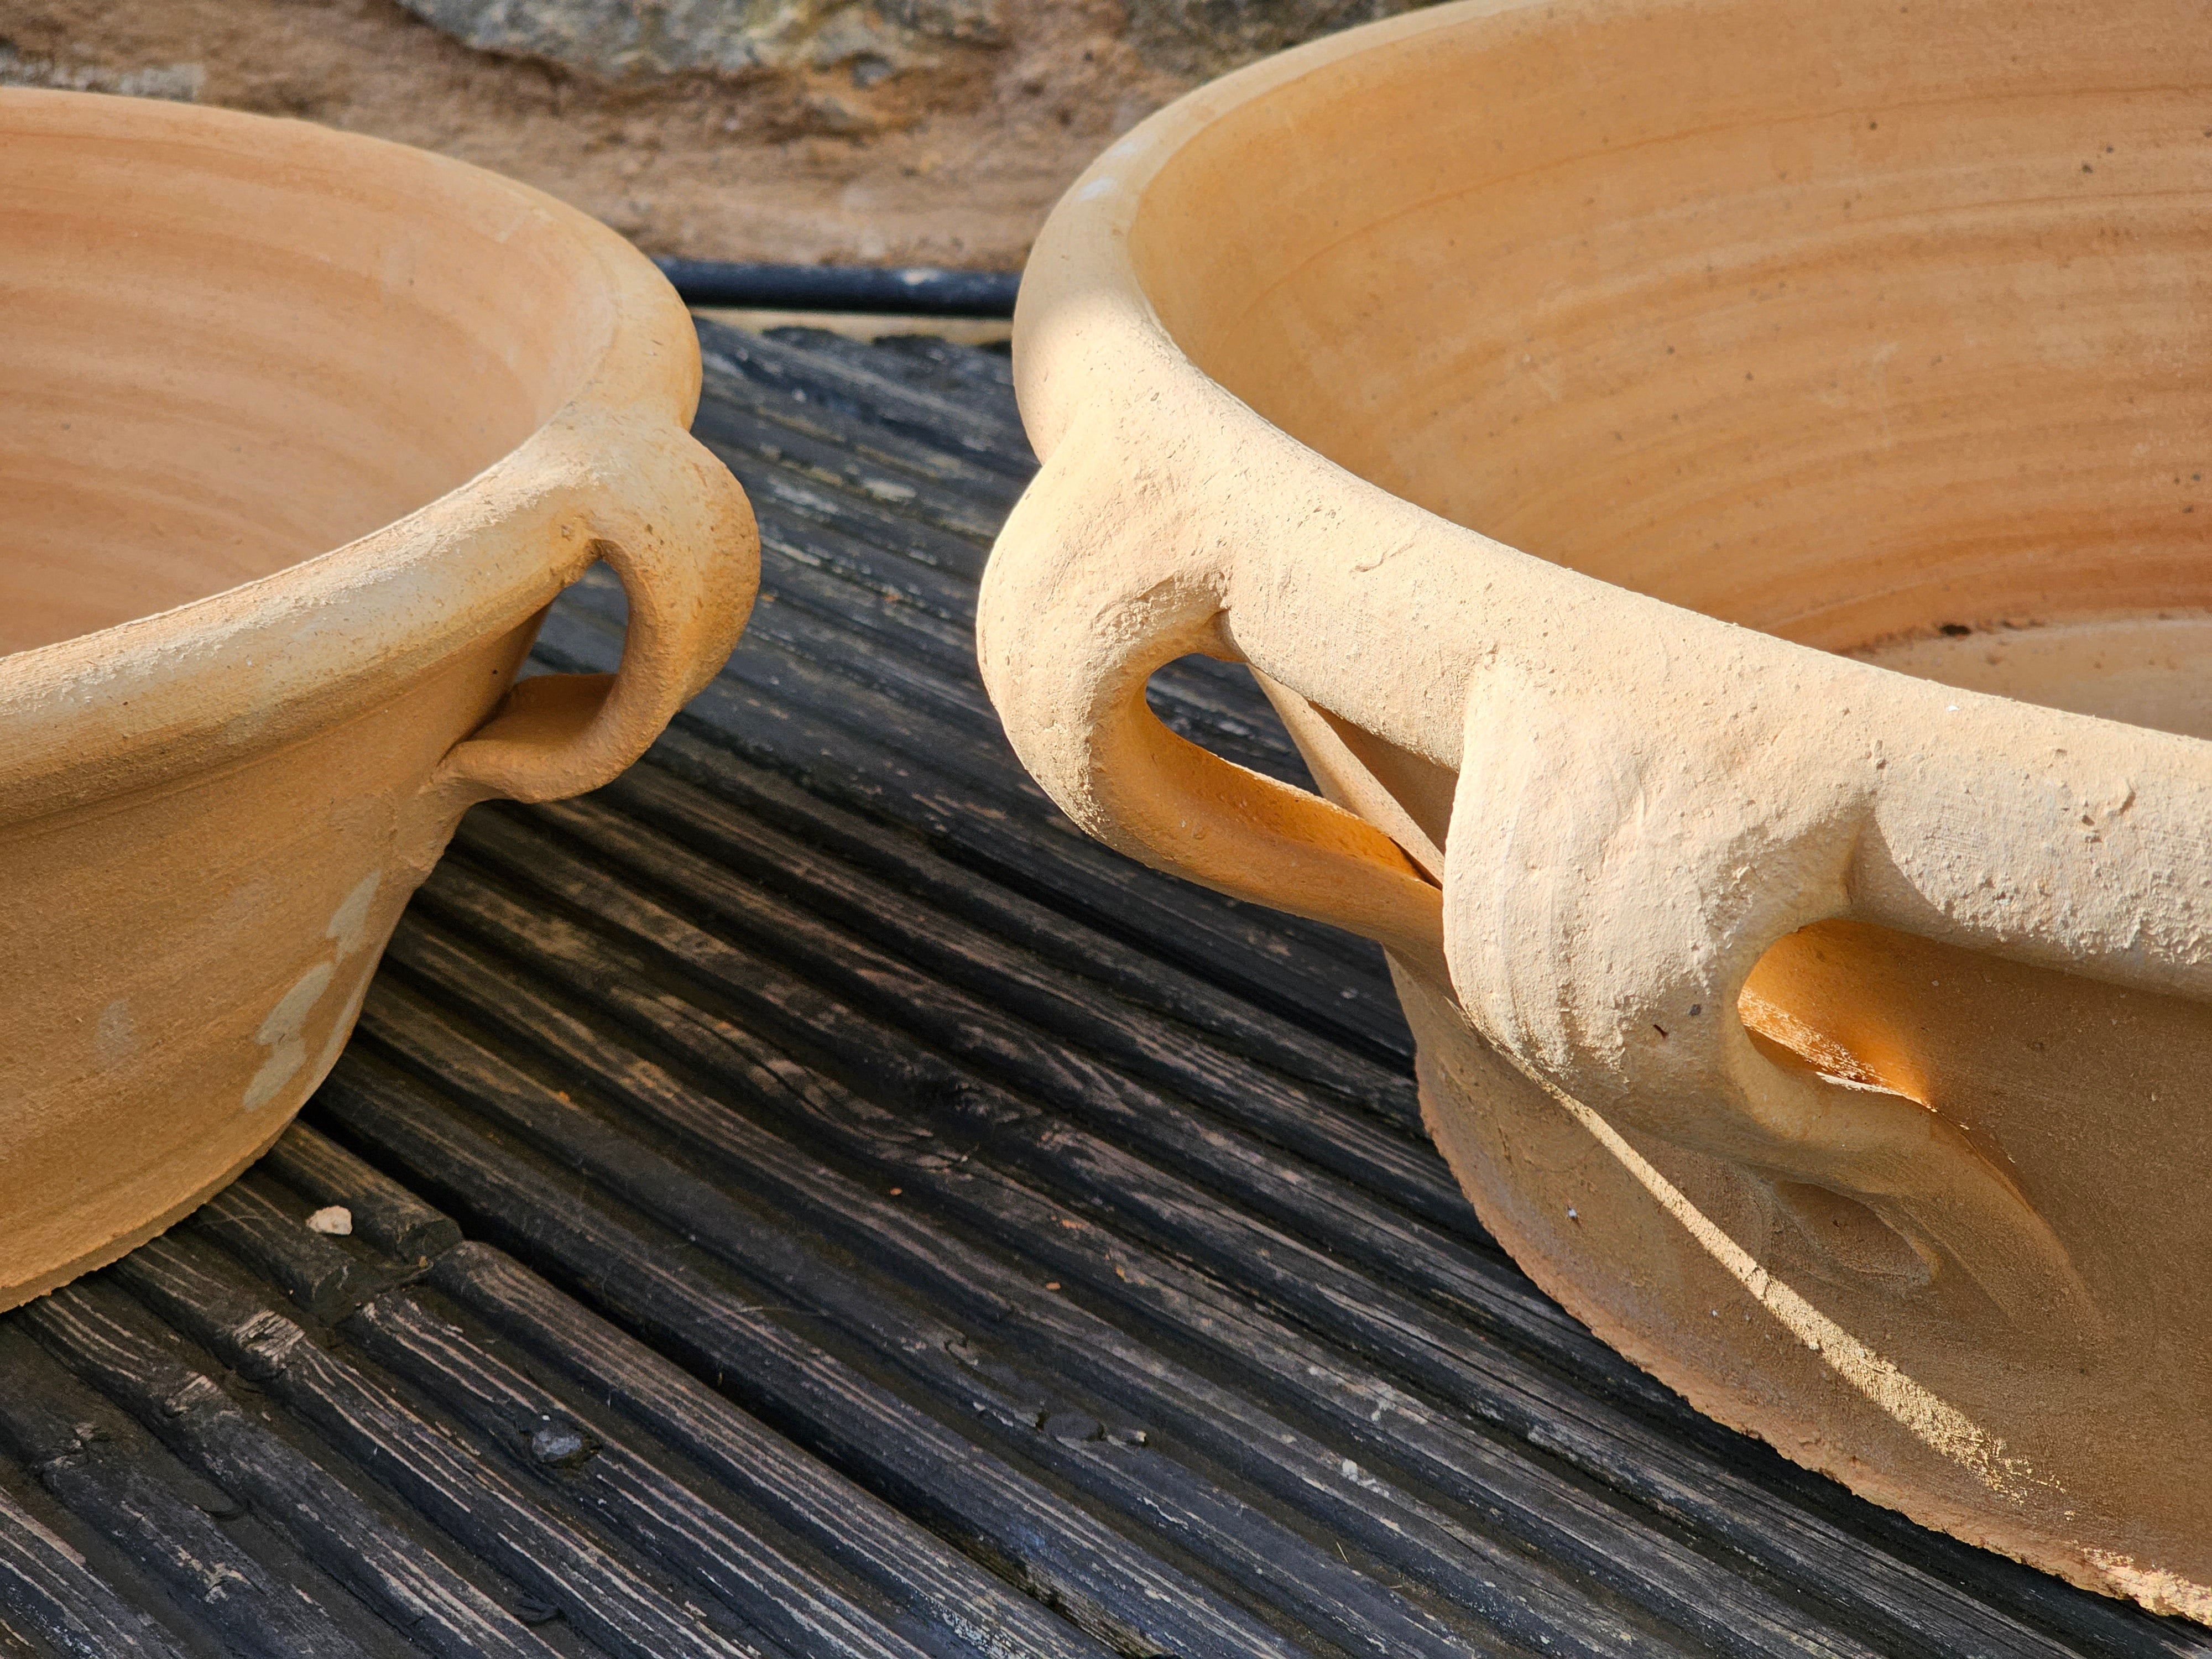 Cretan terracotta pots